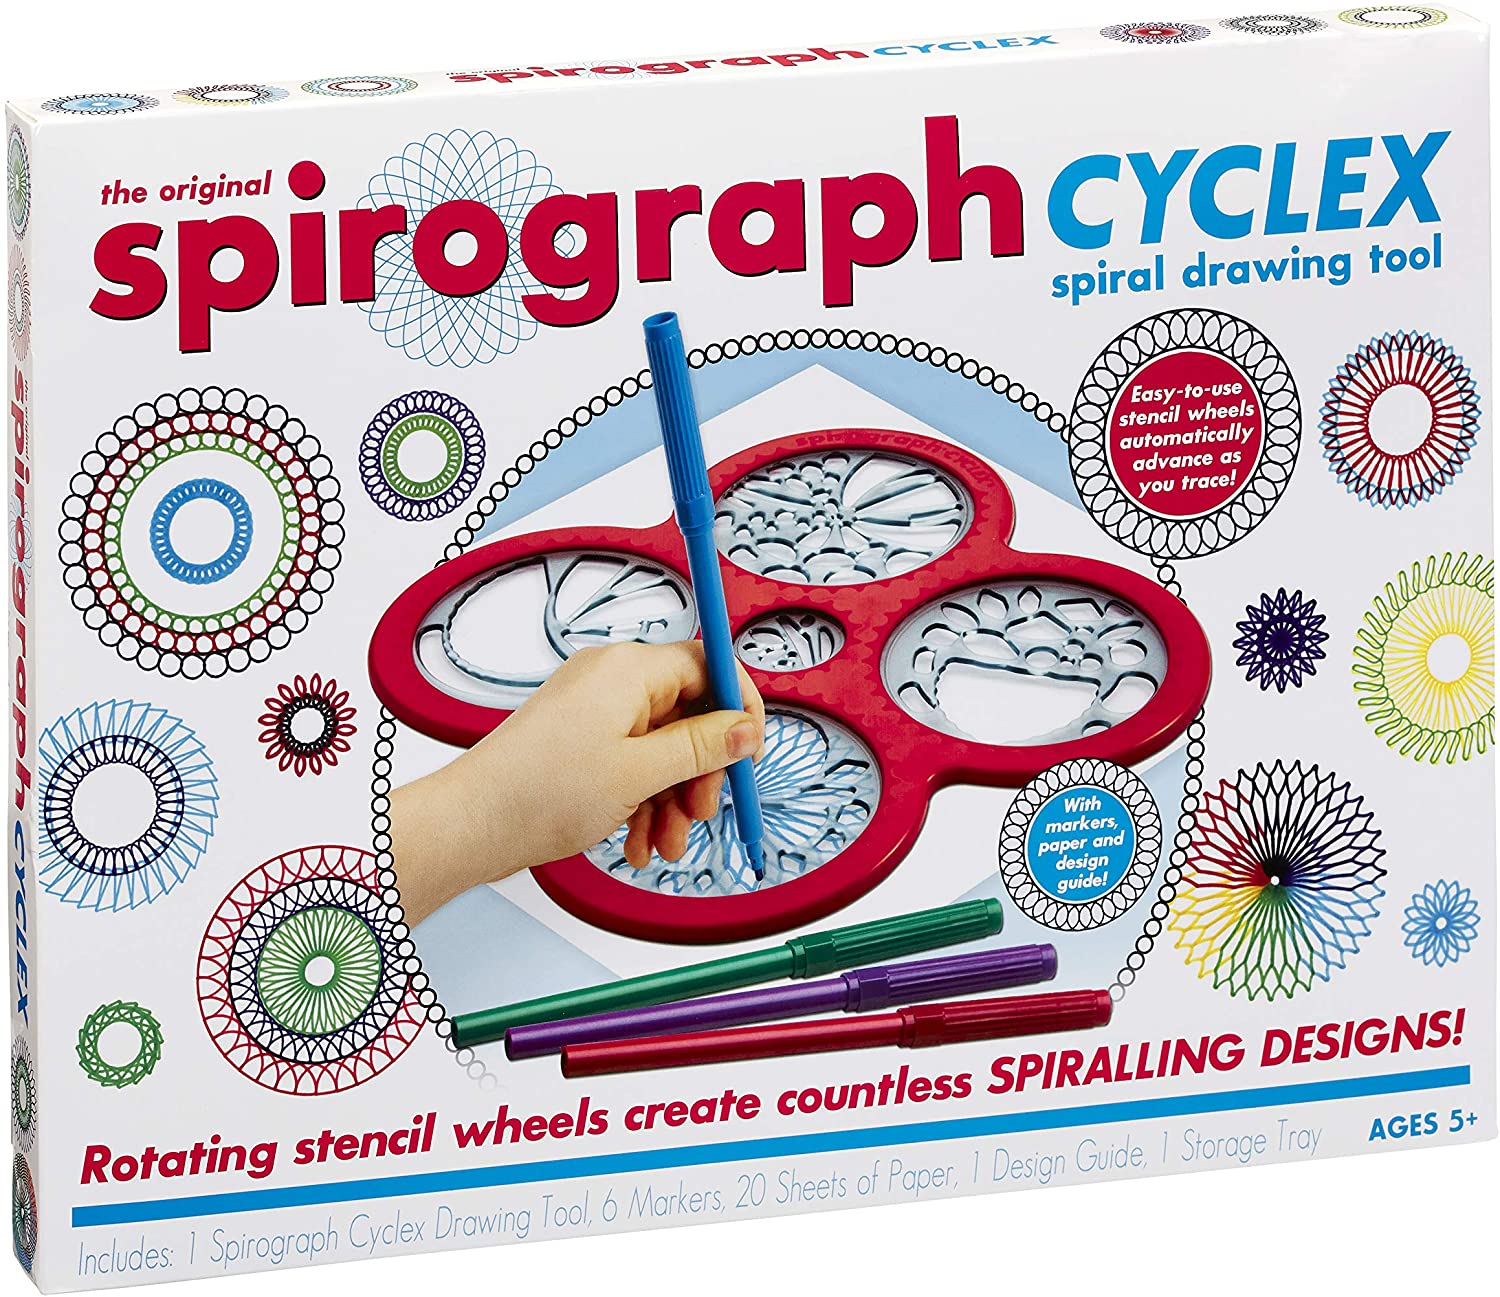 Best pens for spirographs? : r/spirograph